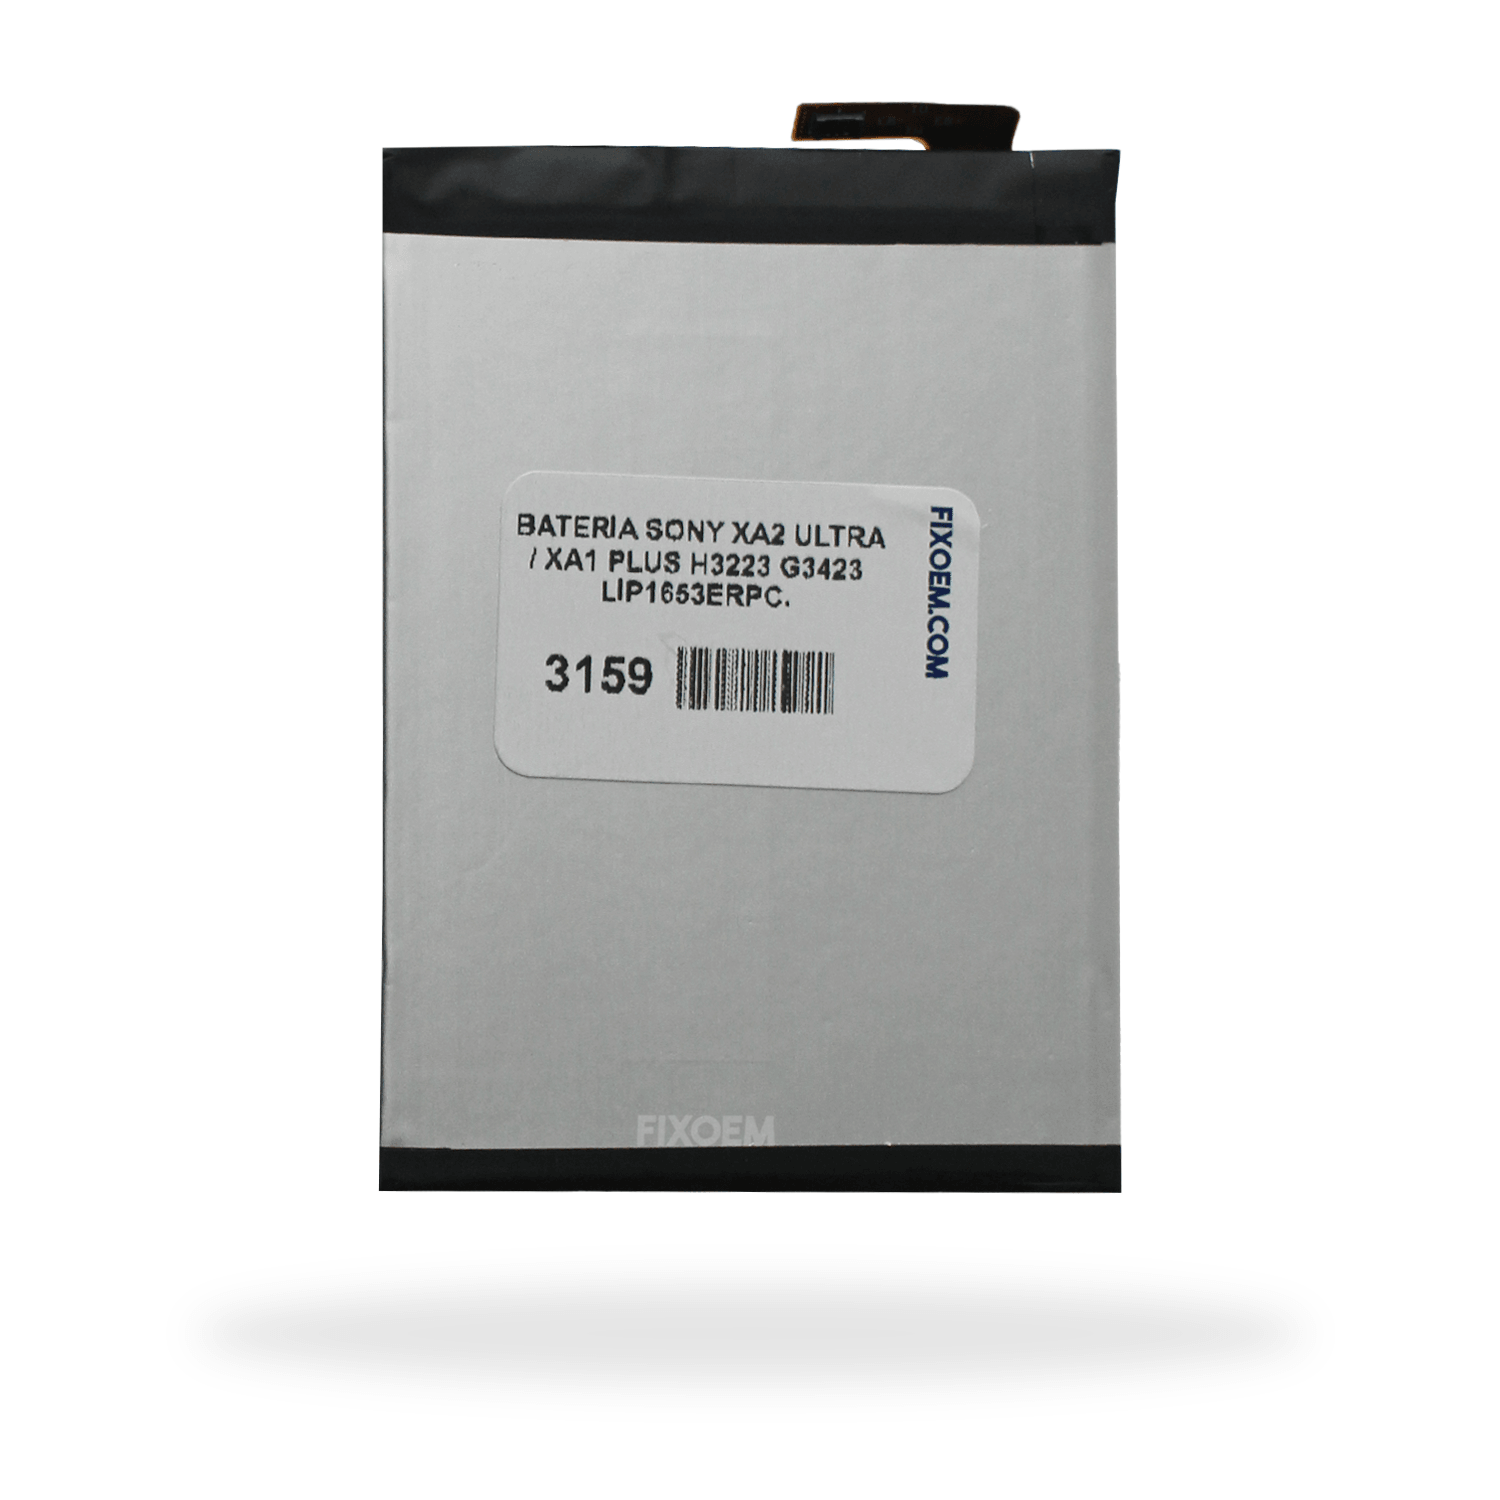 Bateria Sony Xa2 Ultra / Xa1 Plus H3223 G3423 Lip1653Erpc. a solo $ 130.00 Refaccion y puestos celulares, refurbish y microelectronica.- FixOEM